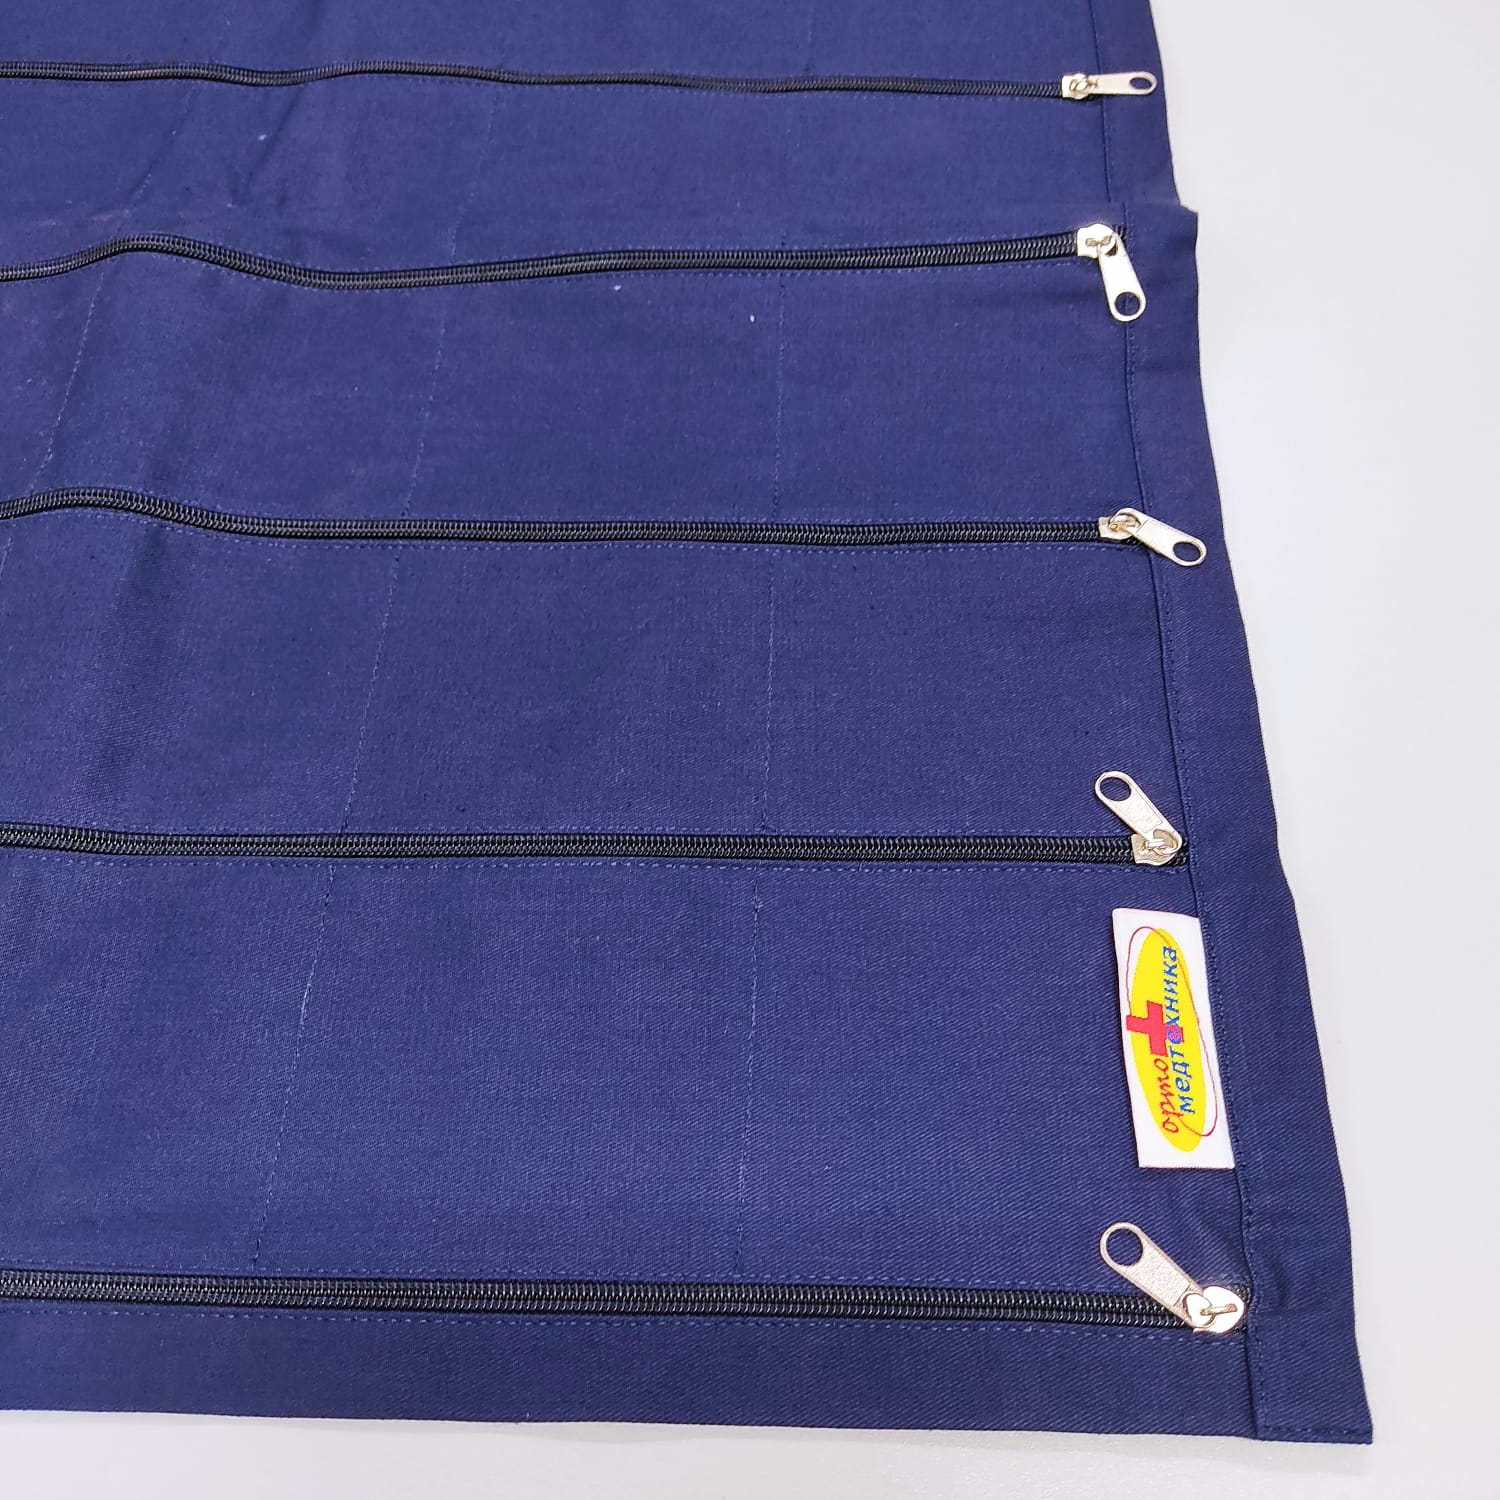 Утяжеленное одеяло регулируемый вес (полимер) ОМТ-11.1 фото 2